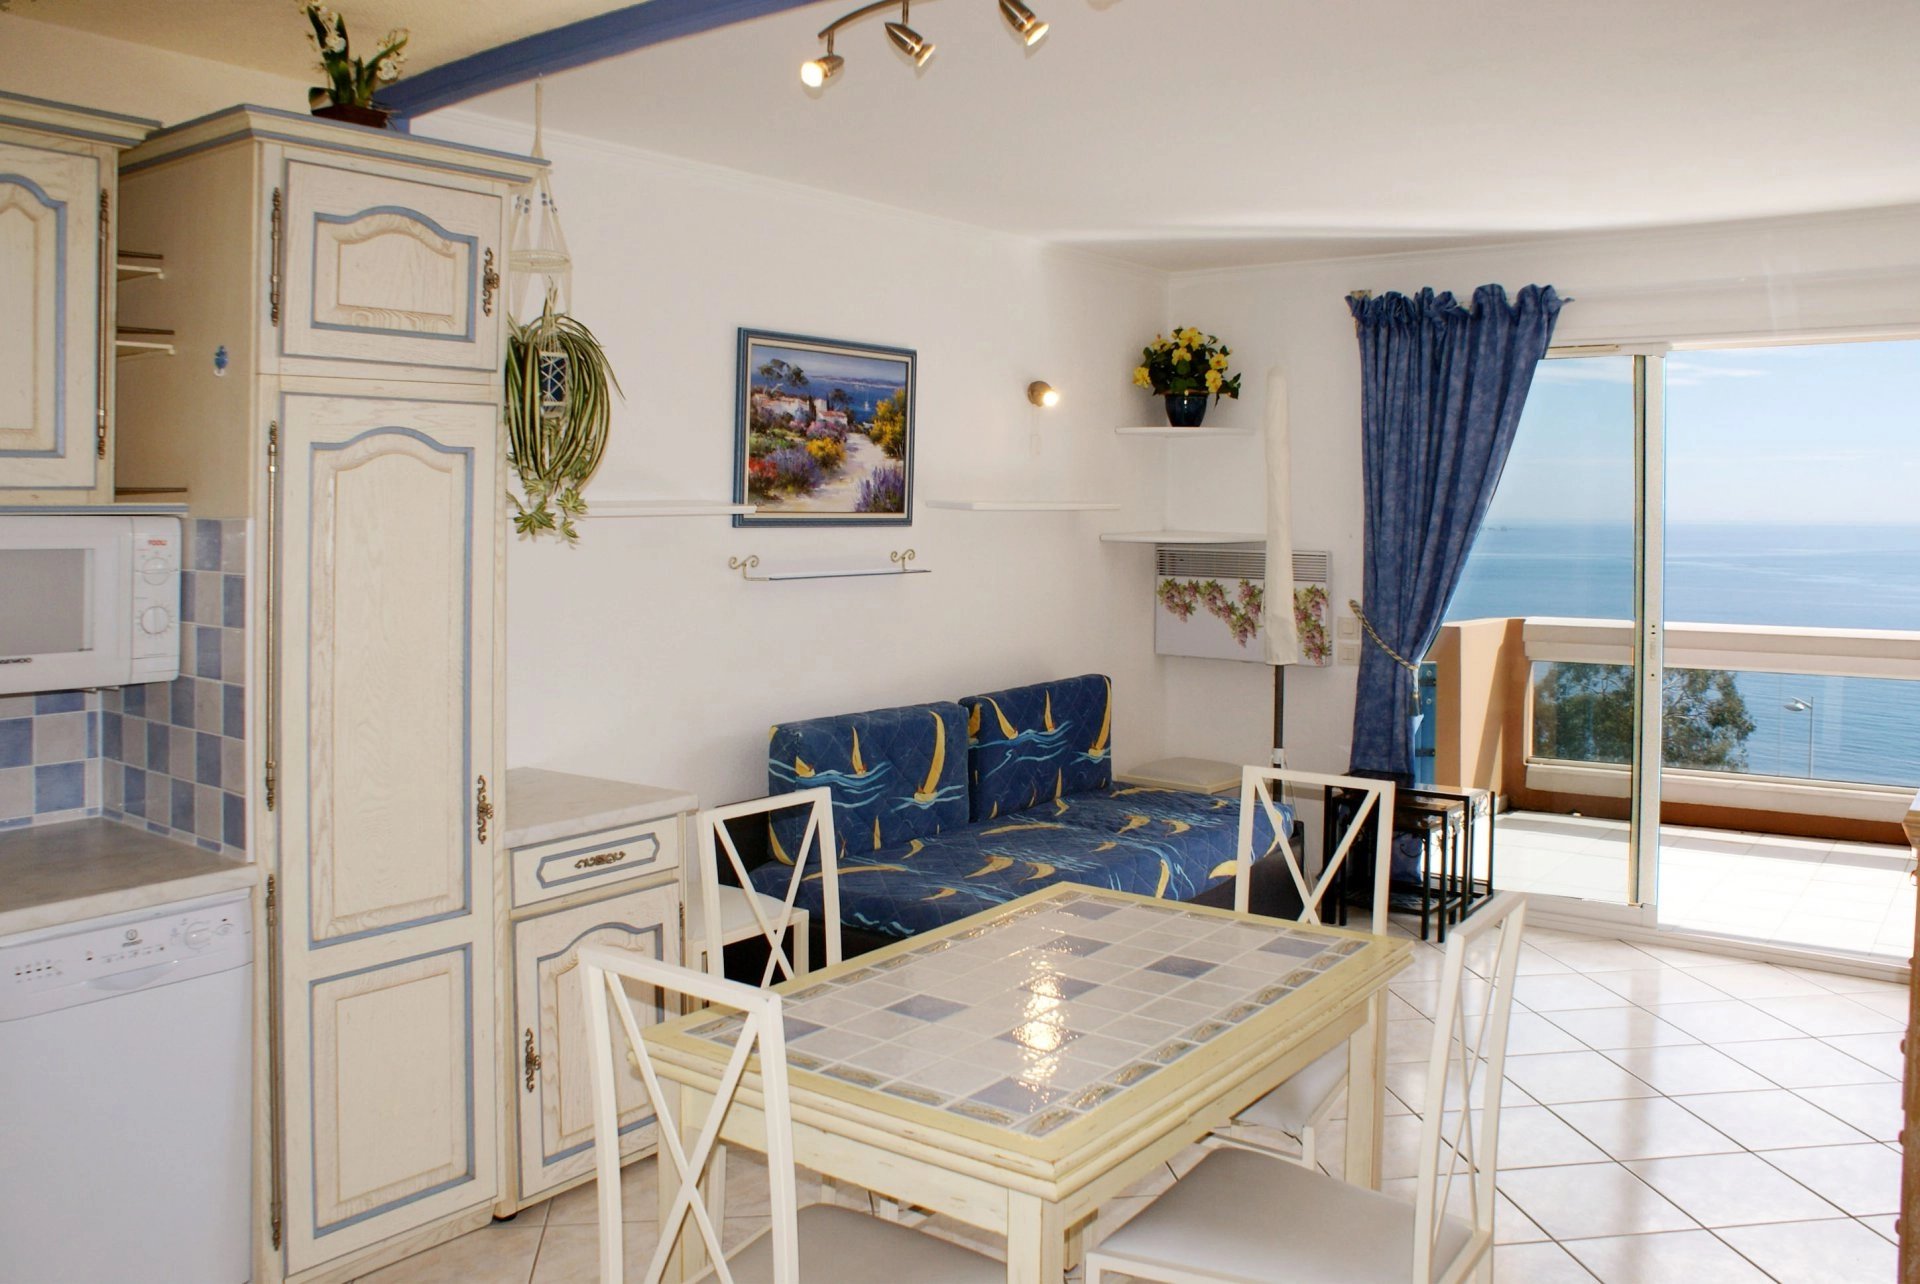 location de vacances: 2 pièces/cabine (2 adultes + 2 enfants) cuisine avec lave vaisselle, lave linge, terrasse, belle vue sur la baie de Cannes  * TH 217 *